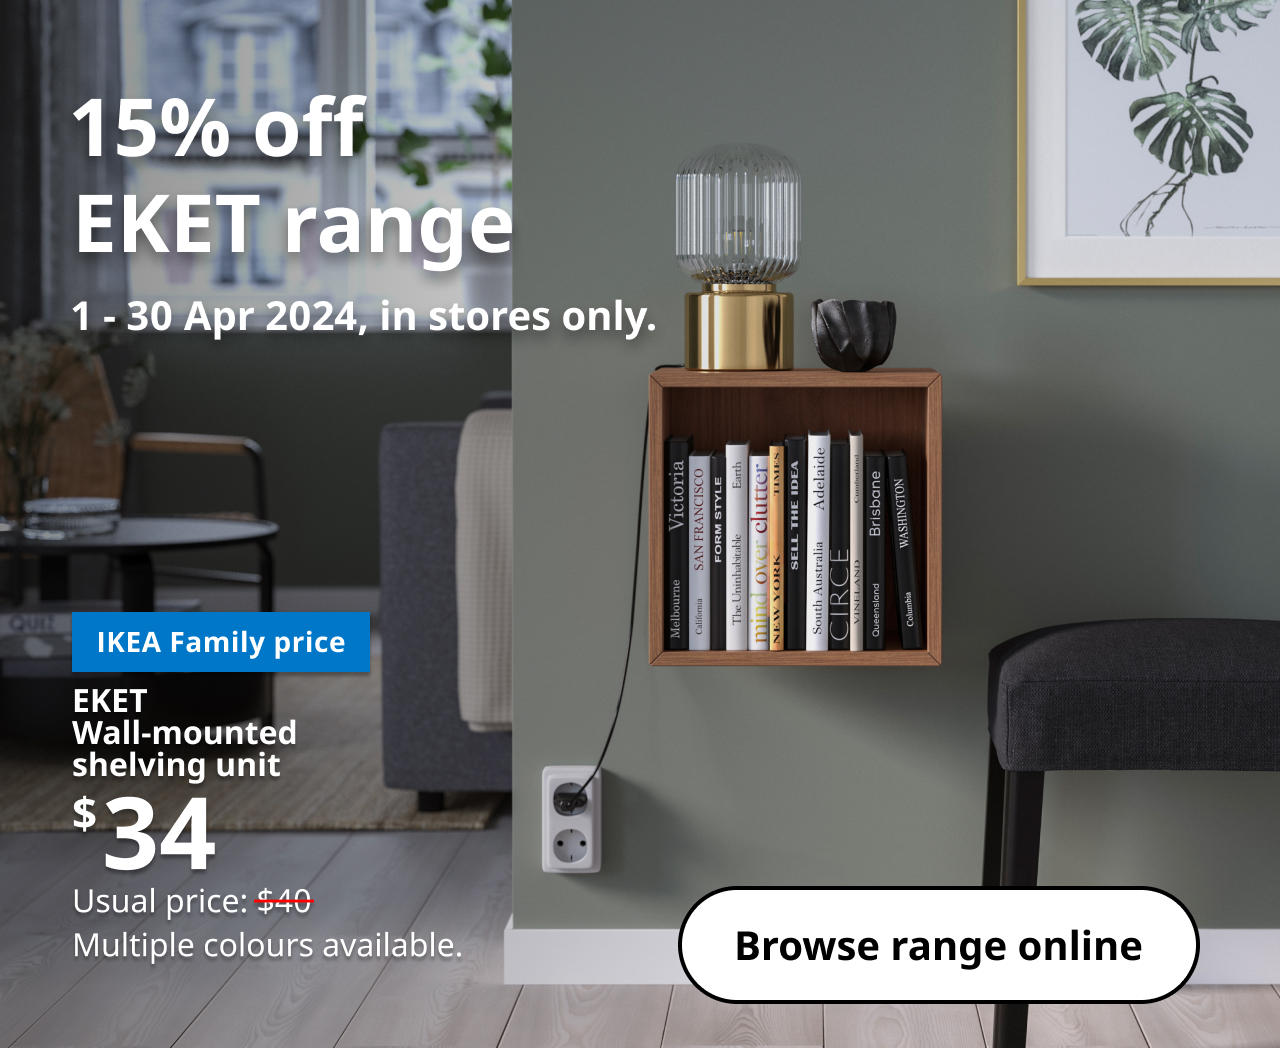 IKEA Family Eket Promo